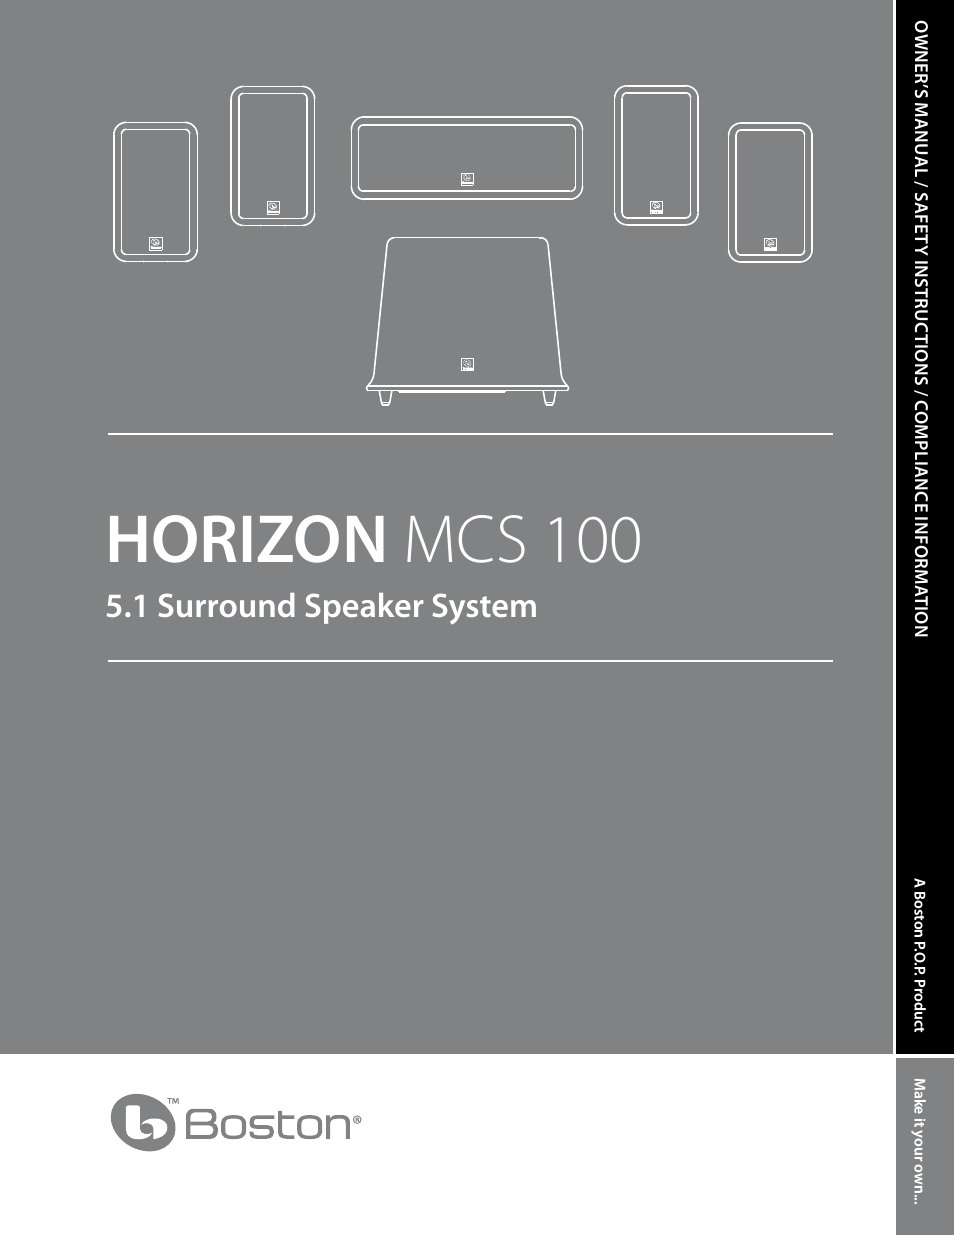 Horizon MCS 100